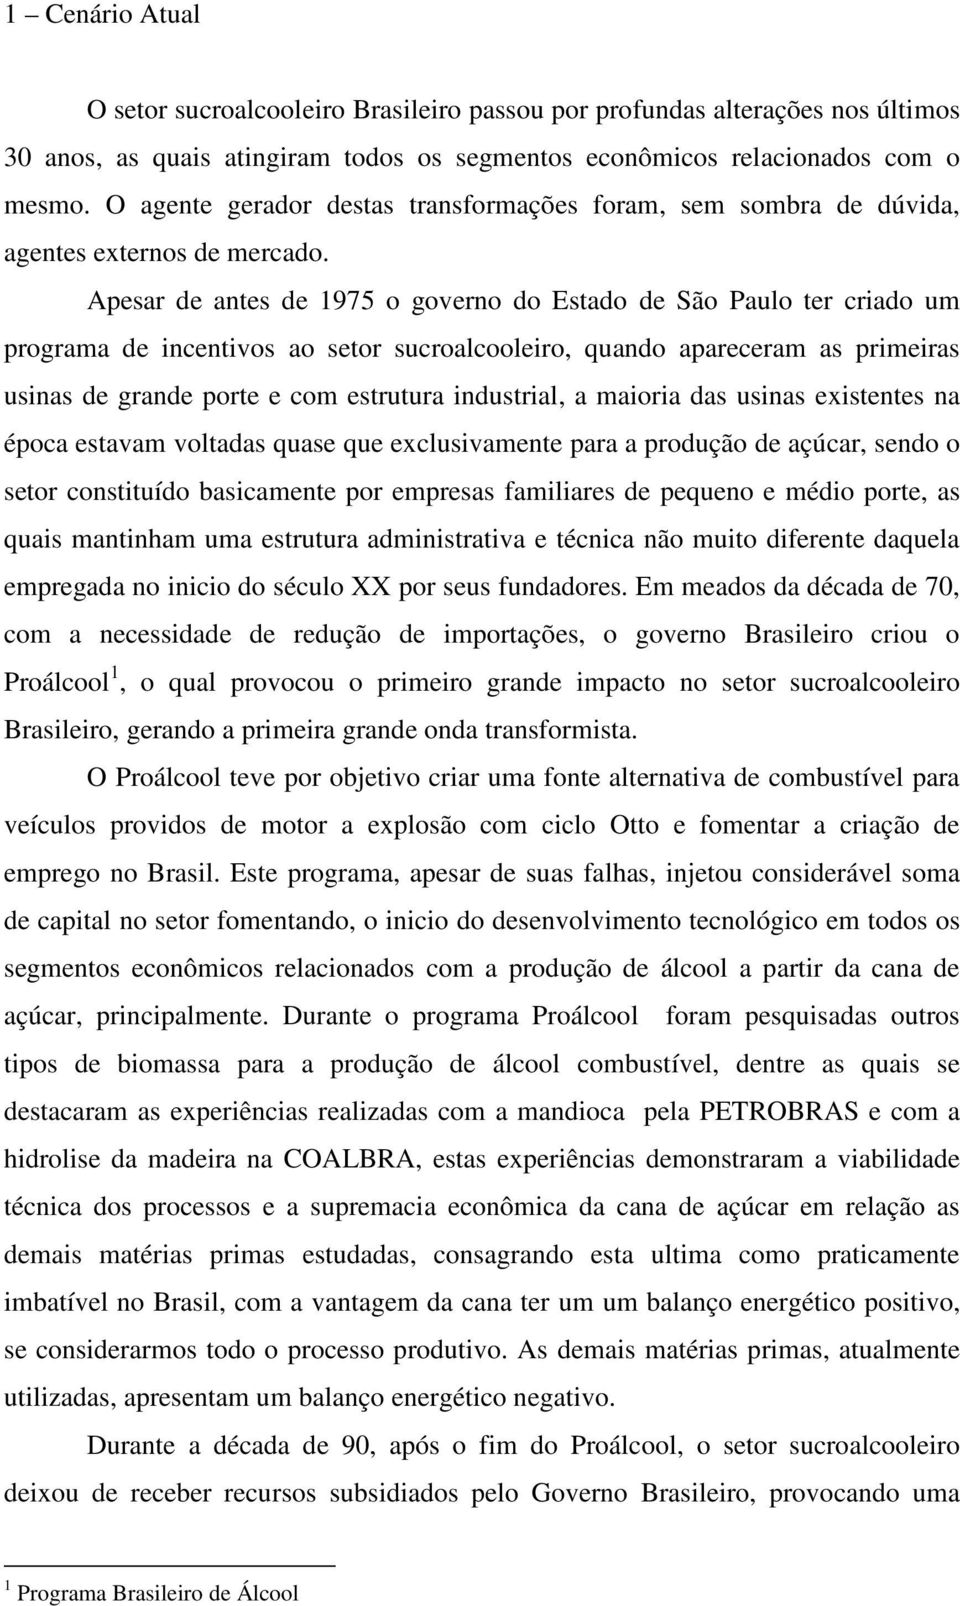 Apesar de antes de 1975 o governo do Estado de São Paulo ter criado um programa de incentivos ao setor sucroalcooleiro, quando apareceram as primeiras usinas de grande porte e com estrutura